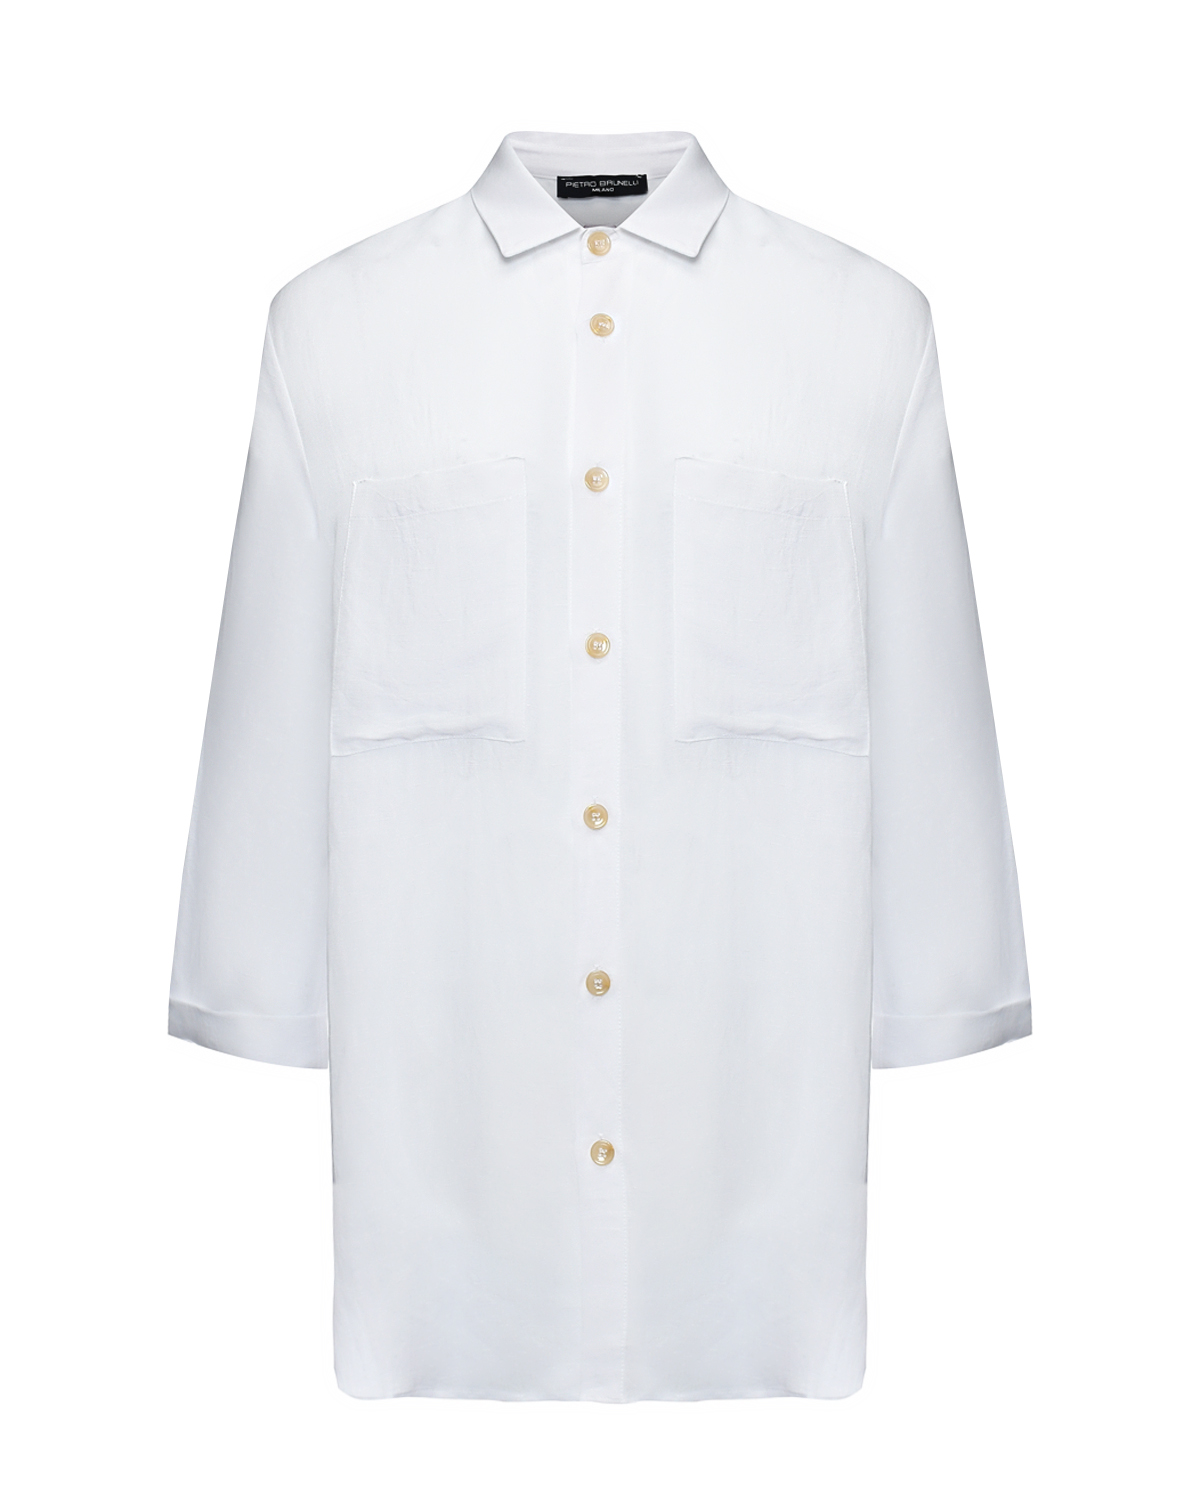 Рубашка льняная свободного кроя Pietro Brunelli, размер 48, цвет белый - фото 1